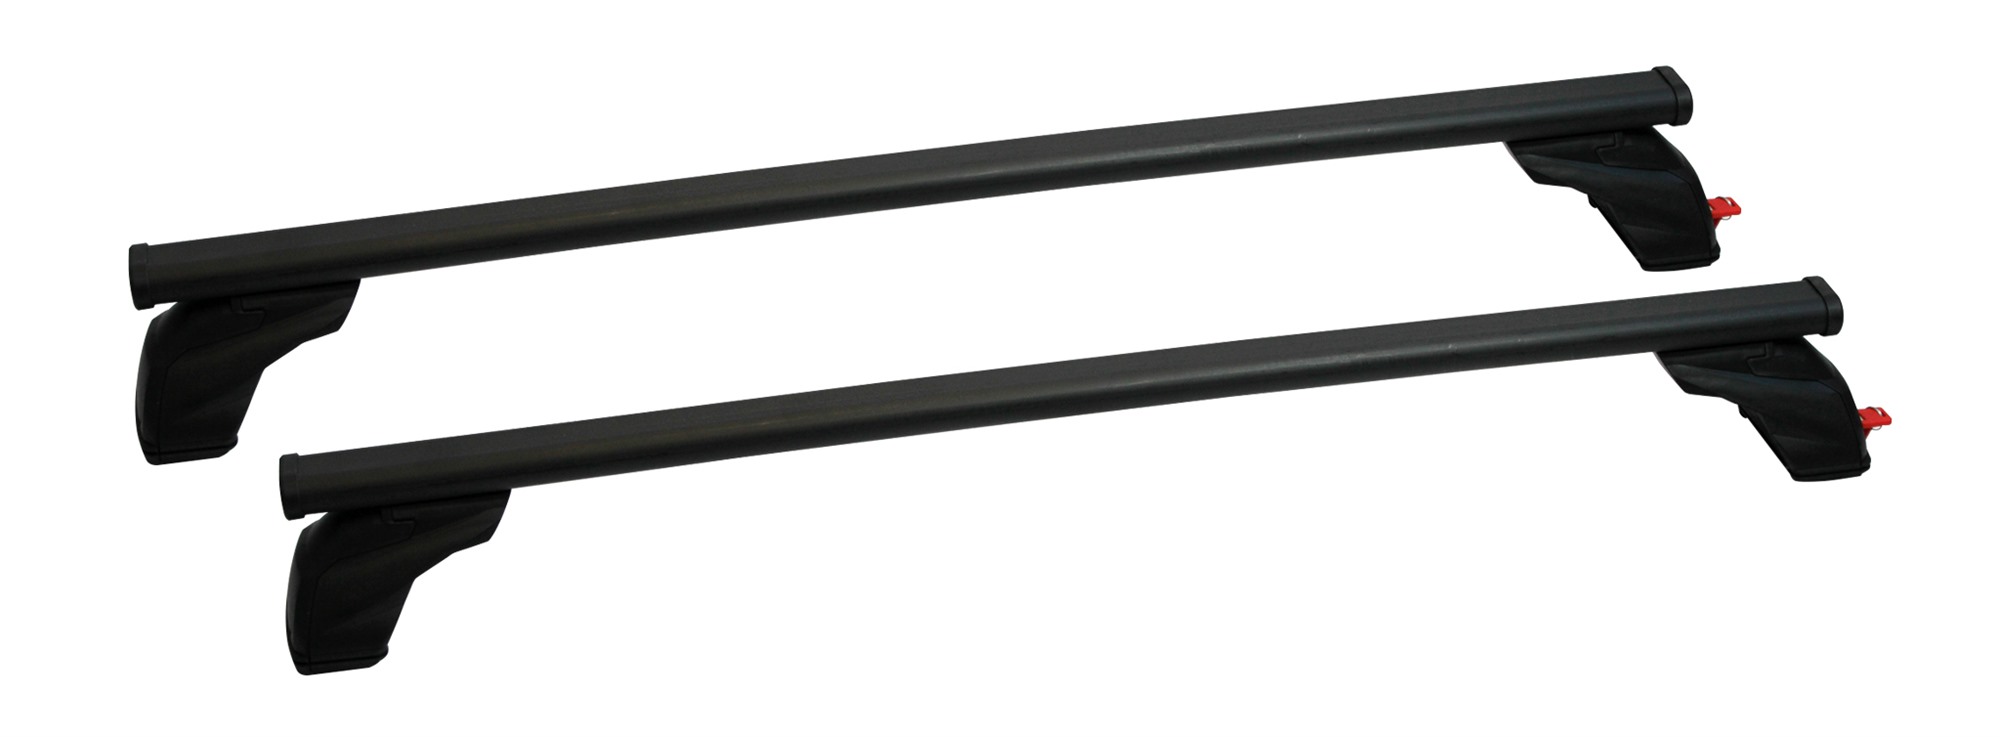 Σετ Μπάρες Οροφής Σιδερένιες με τα πόδια 127εκ για VW Golf 7 5D 2012-2019 2τμχ Pacific G3